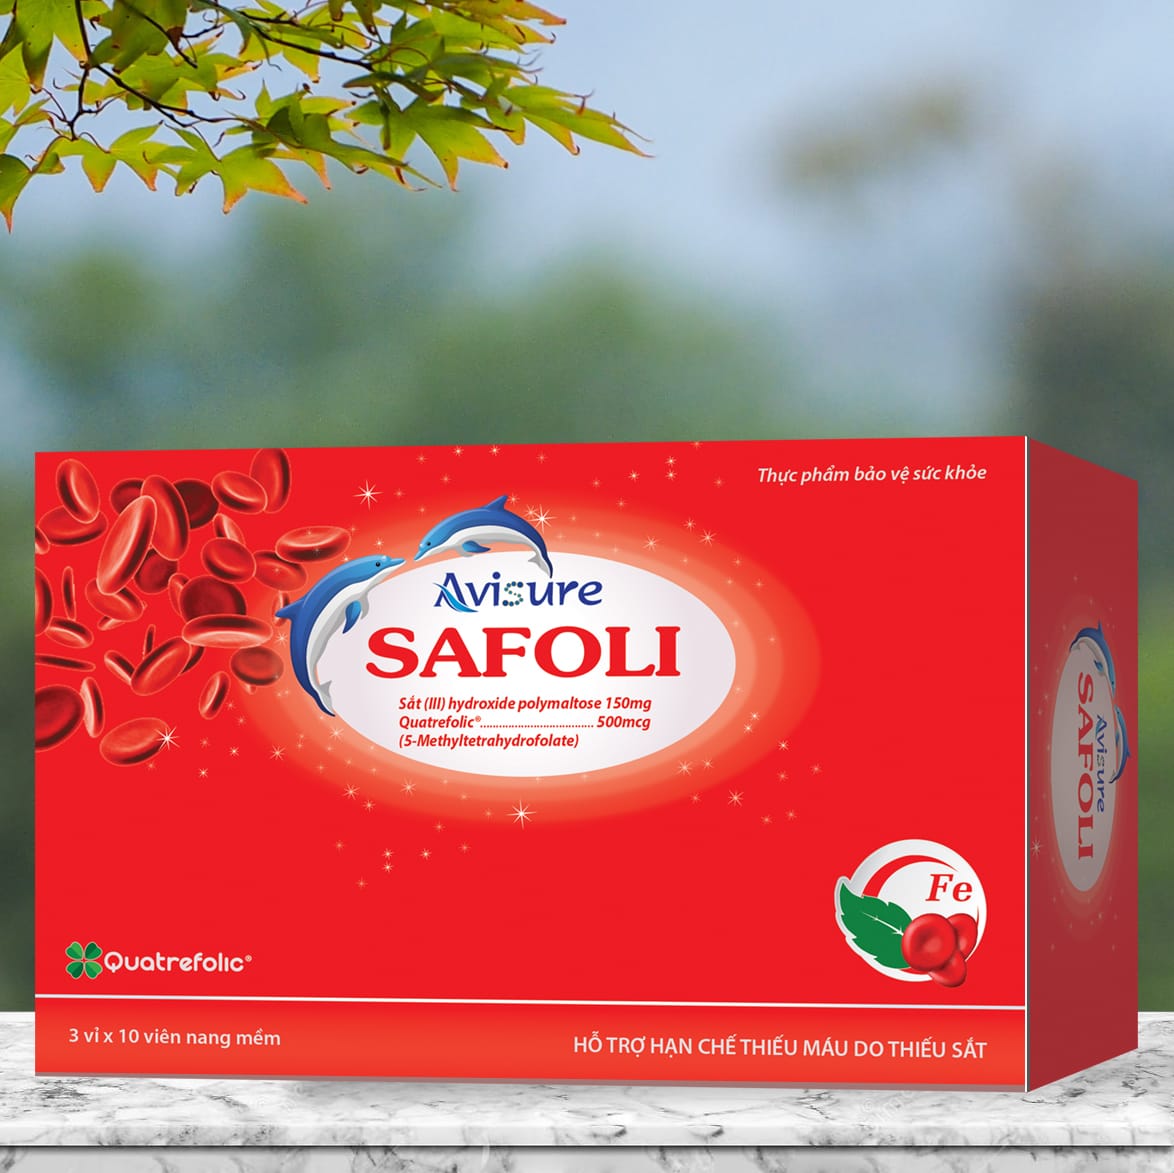 Avisure Safoli được sản xuất bởi Công ty Mega We Care, Thái Lan